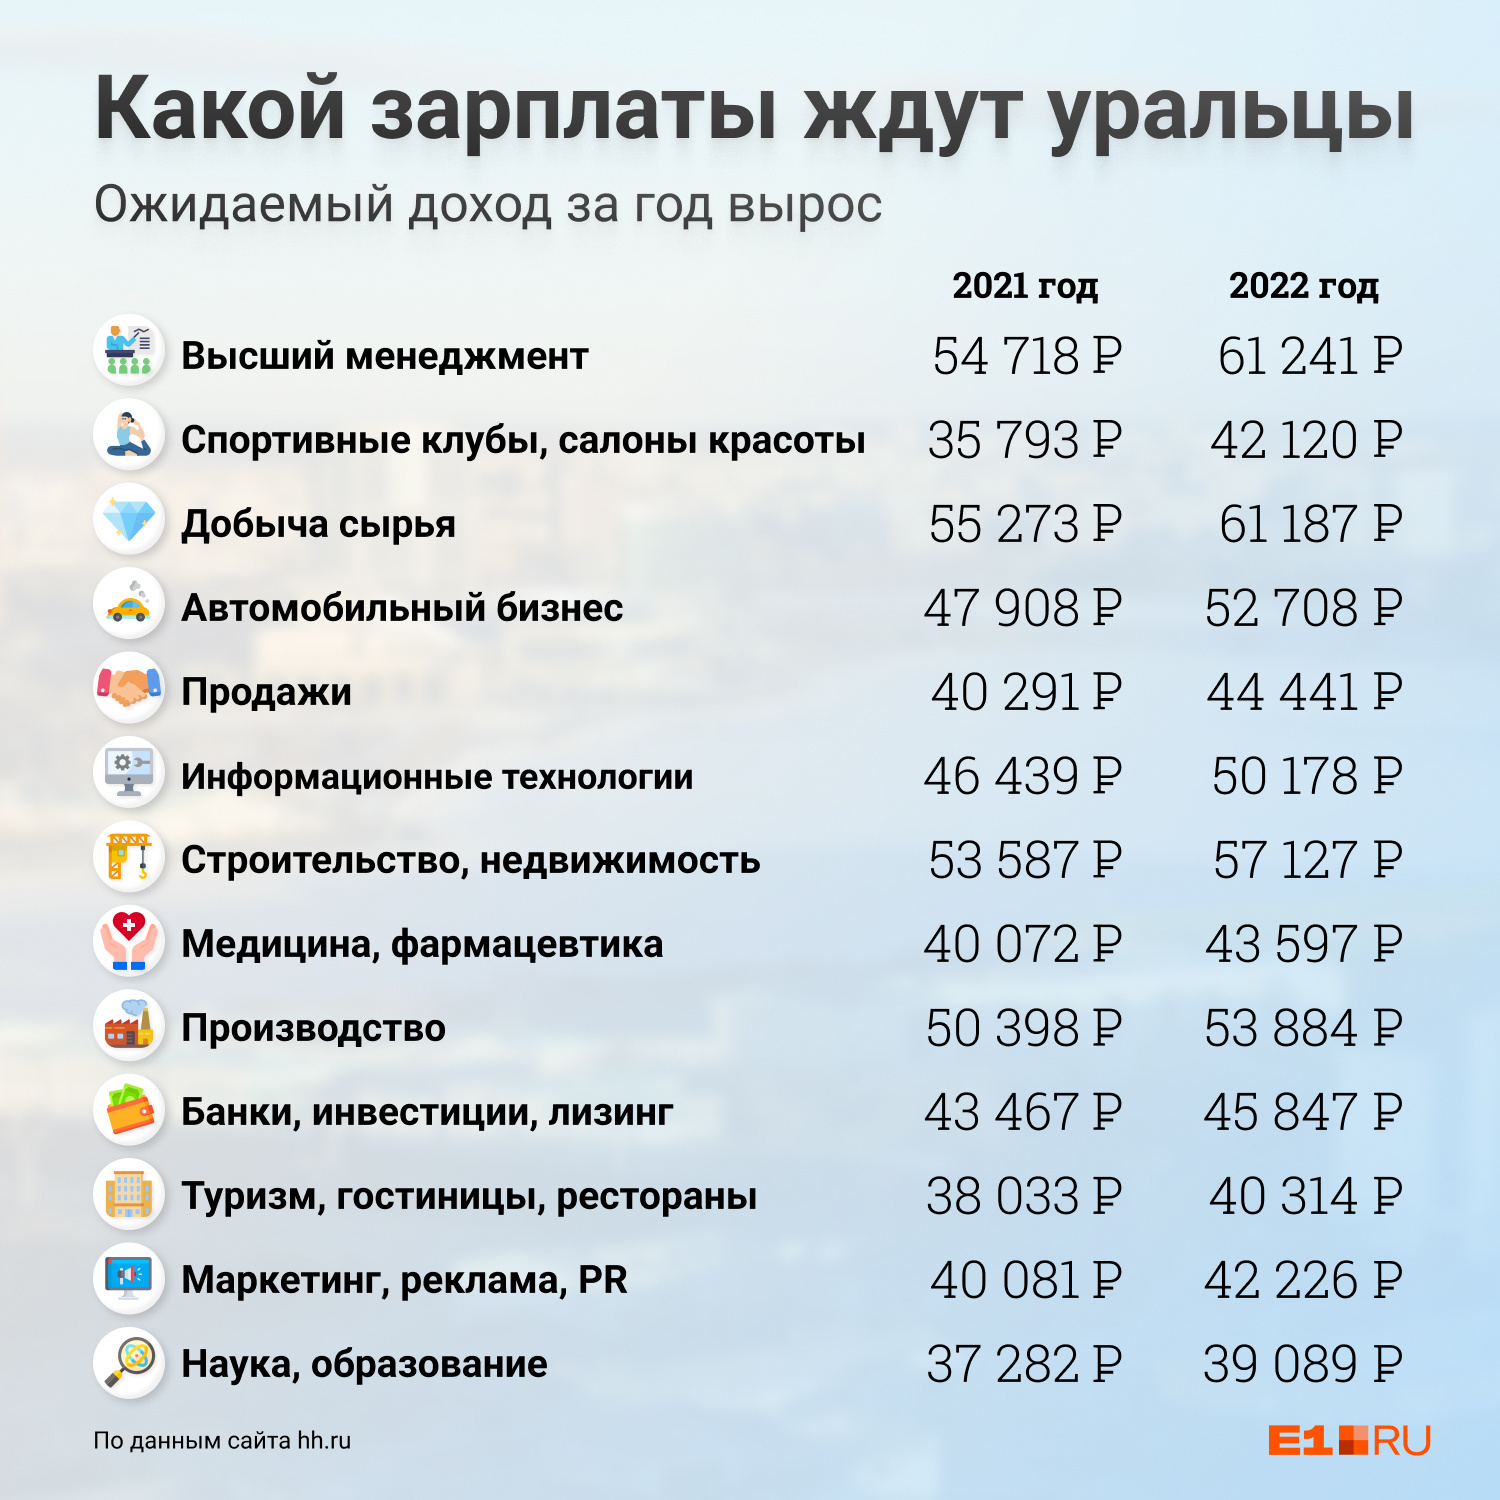 Уральцы в поисках работы рассчитывают на более высокие зарплаты по сравнению с прошлым годом